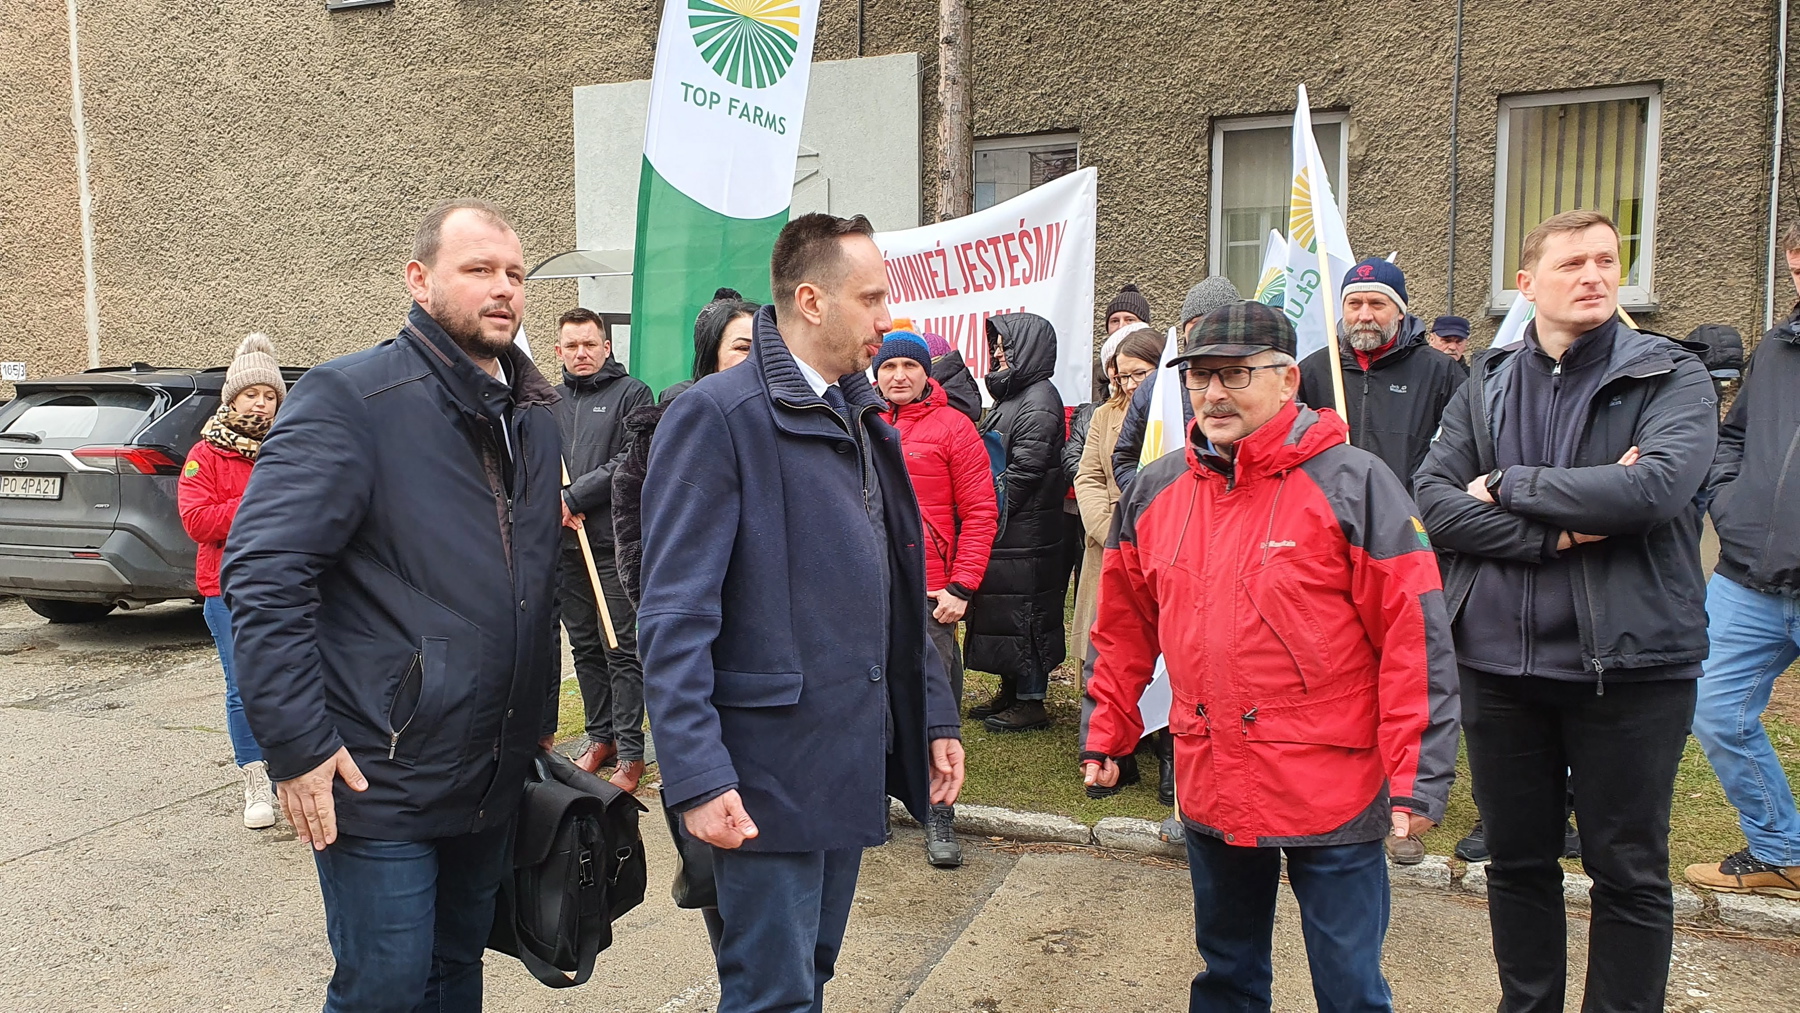 Spotkanie z protestującymi w Top Farms Głubczyce. Od lewej: Tomasz Ognisty i Janusz Kowalski, 21 lutego 2022 R.